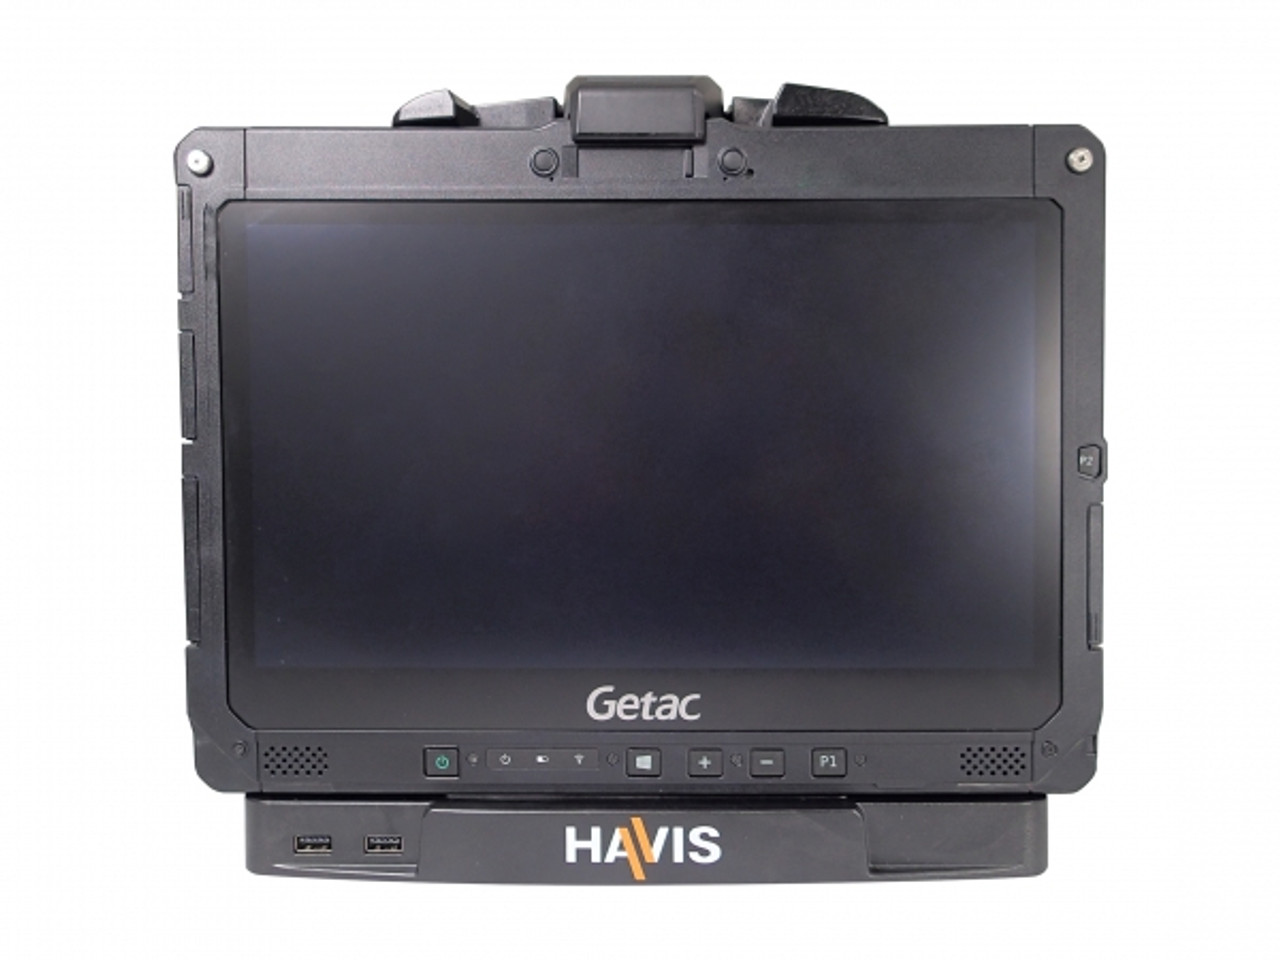 Havis DS-GTC-901 Docking Station for Getac K120 Tablet